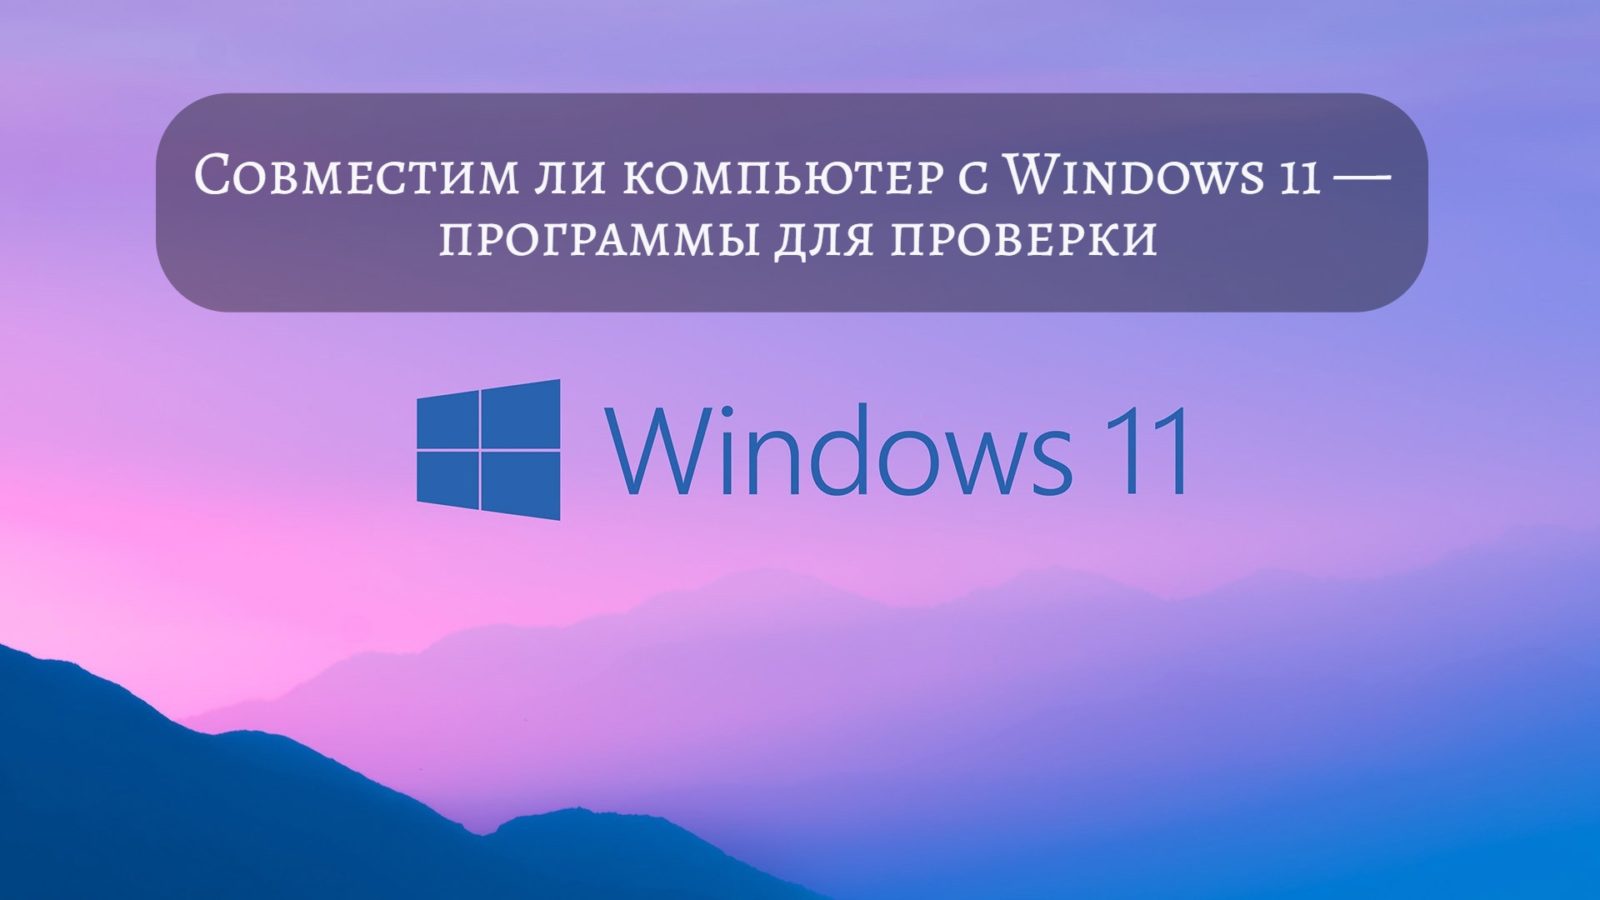 Совместим ли компьютер с Windows 11 — программы для проверки